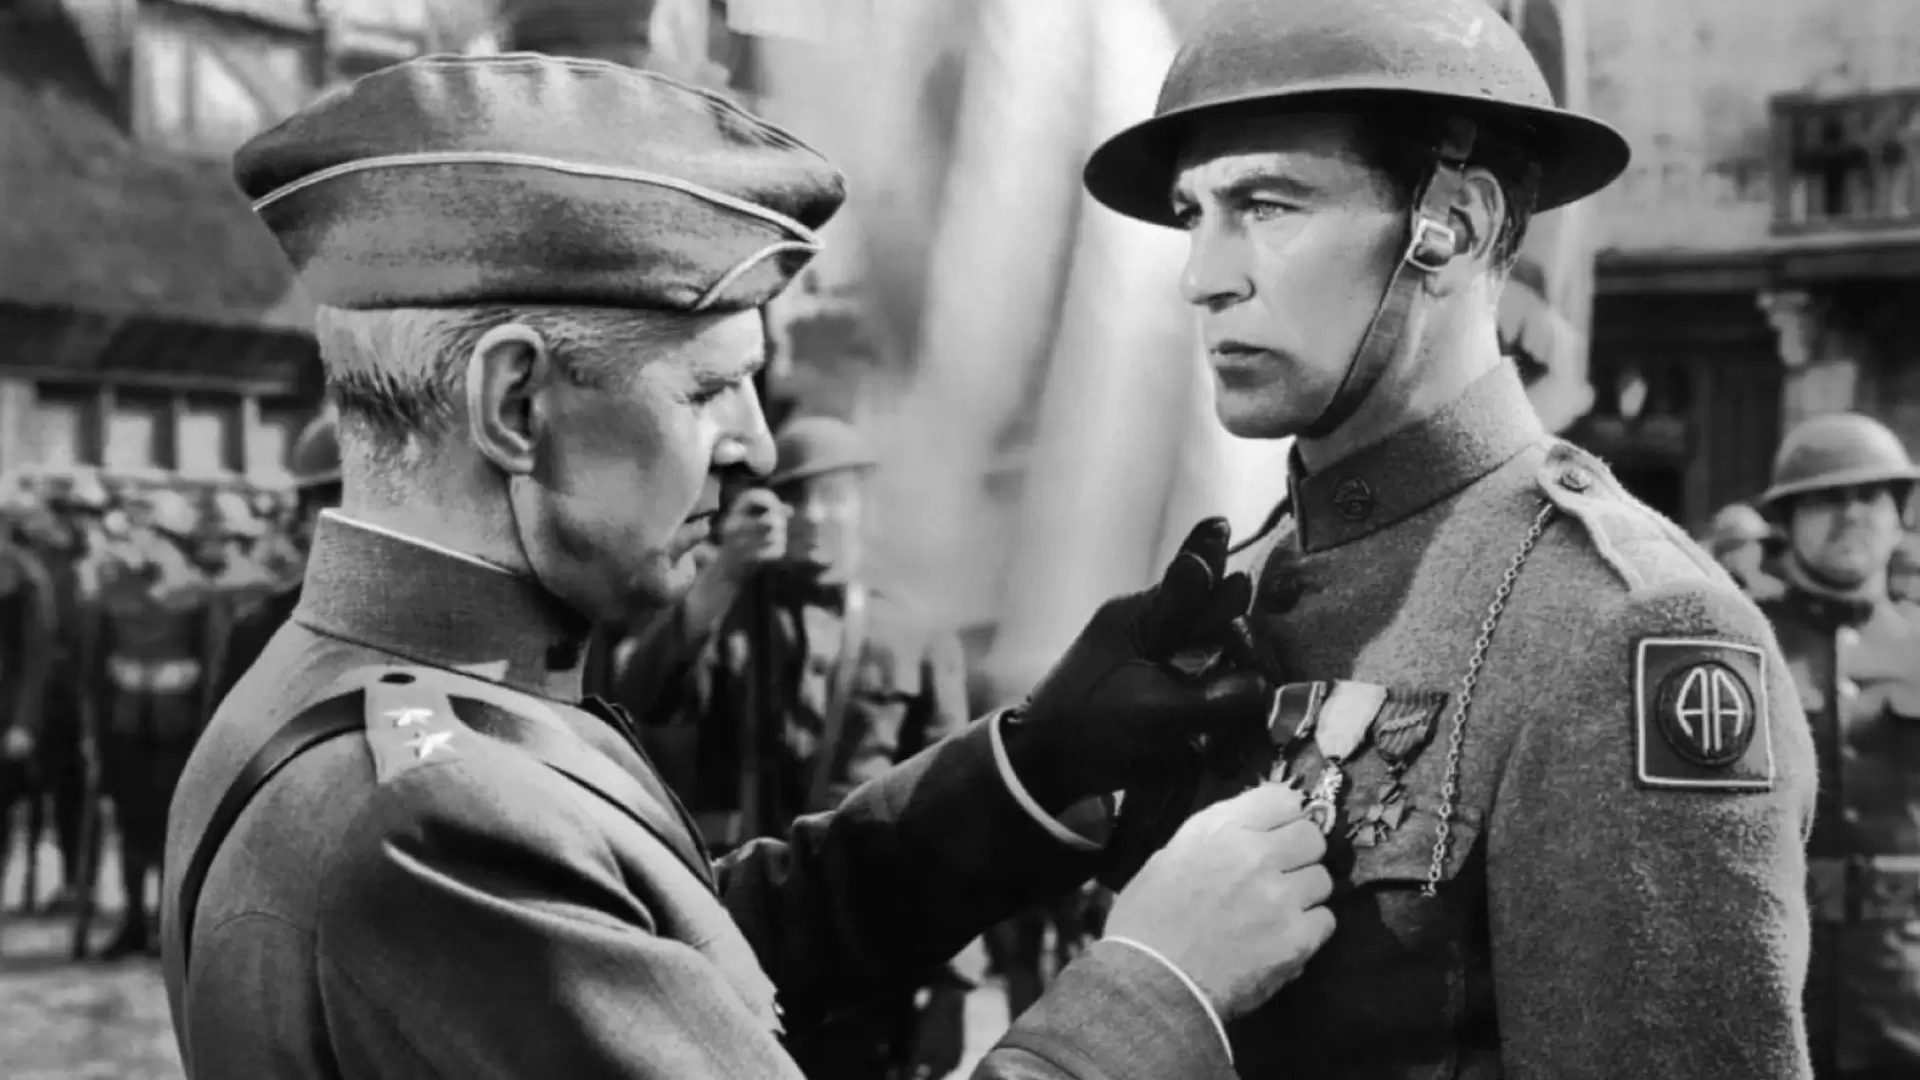 دانلود فیلم Sergeant York 1941 (گروهبان یورک) با زیرنویس فارسی و تماشای آنلاین